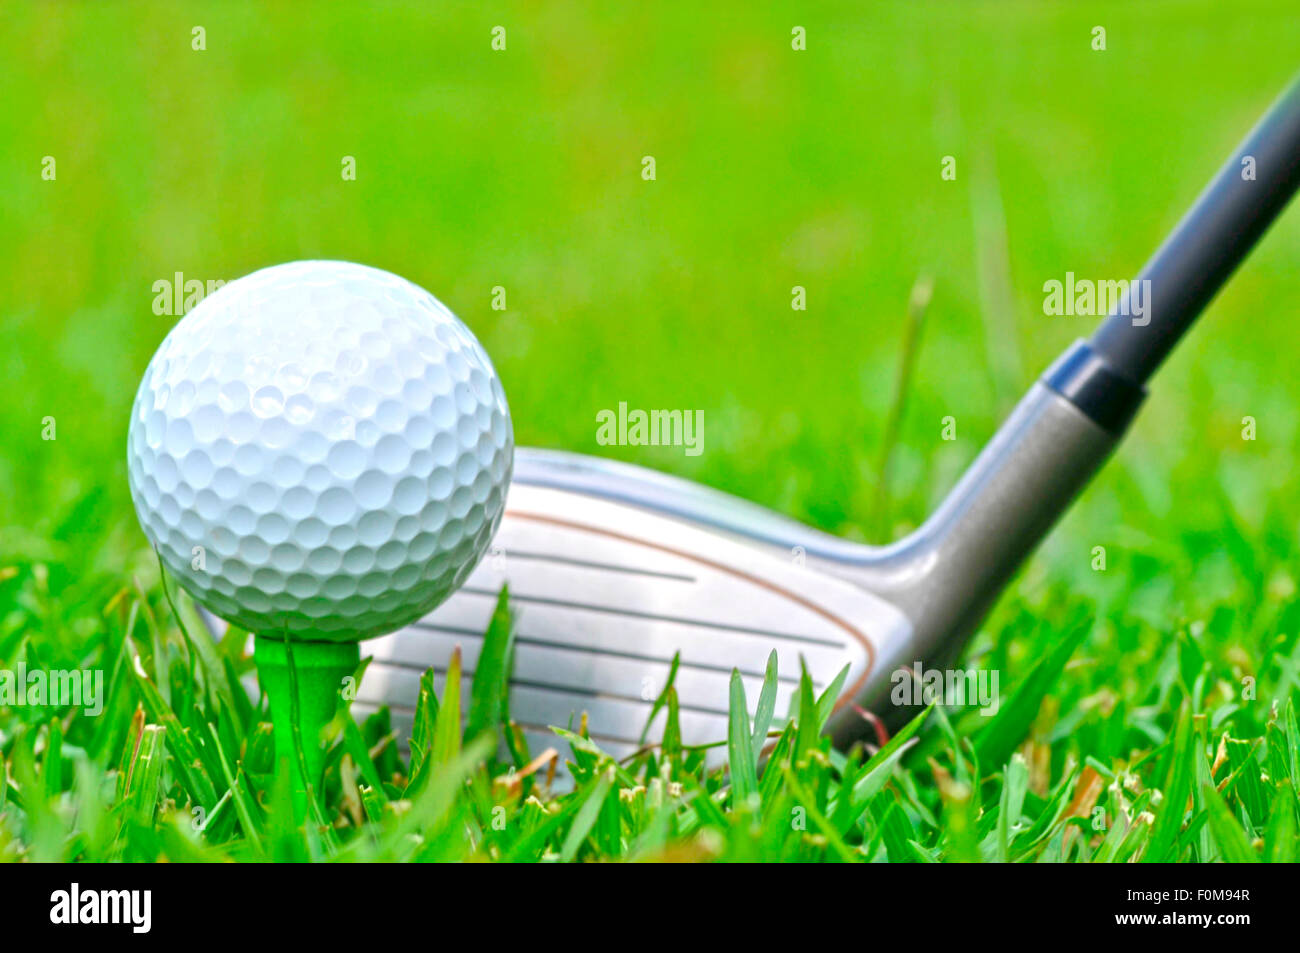 Con una mazza da golf immagini e fotografie stock ad alta risoluzione -  Alamy